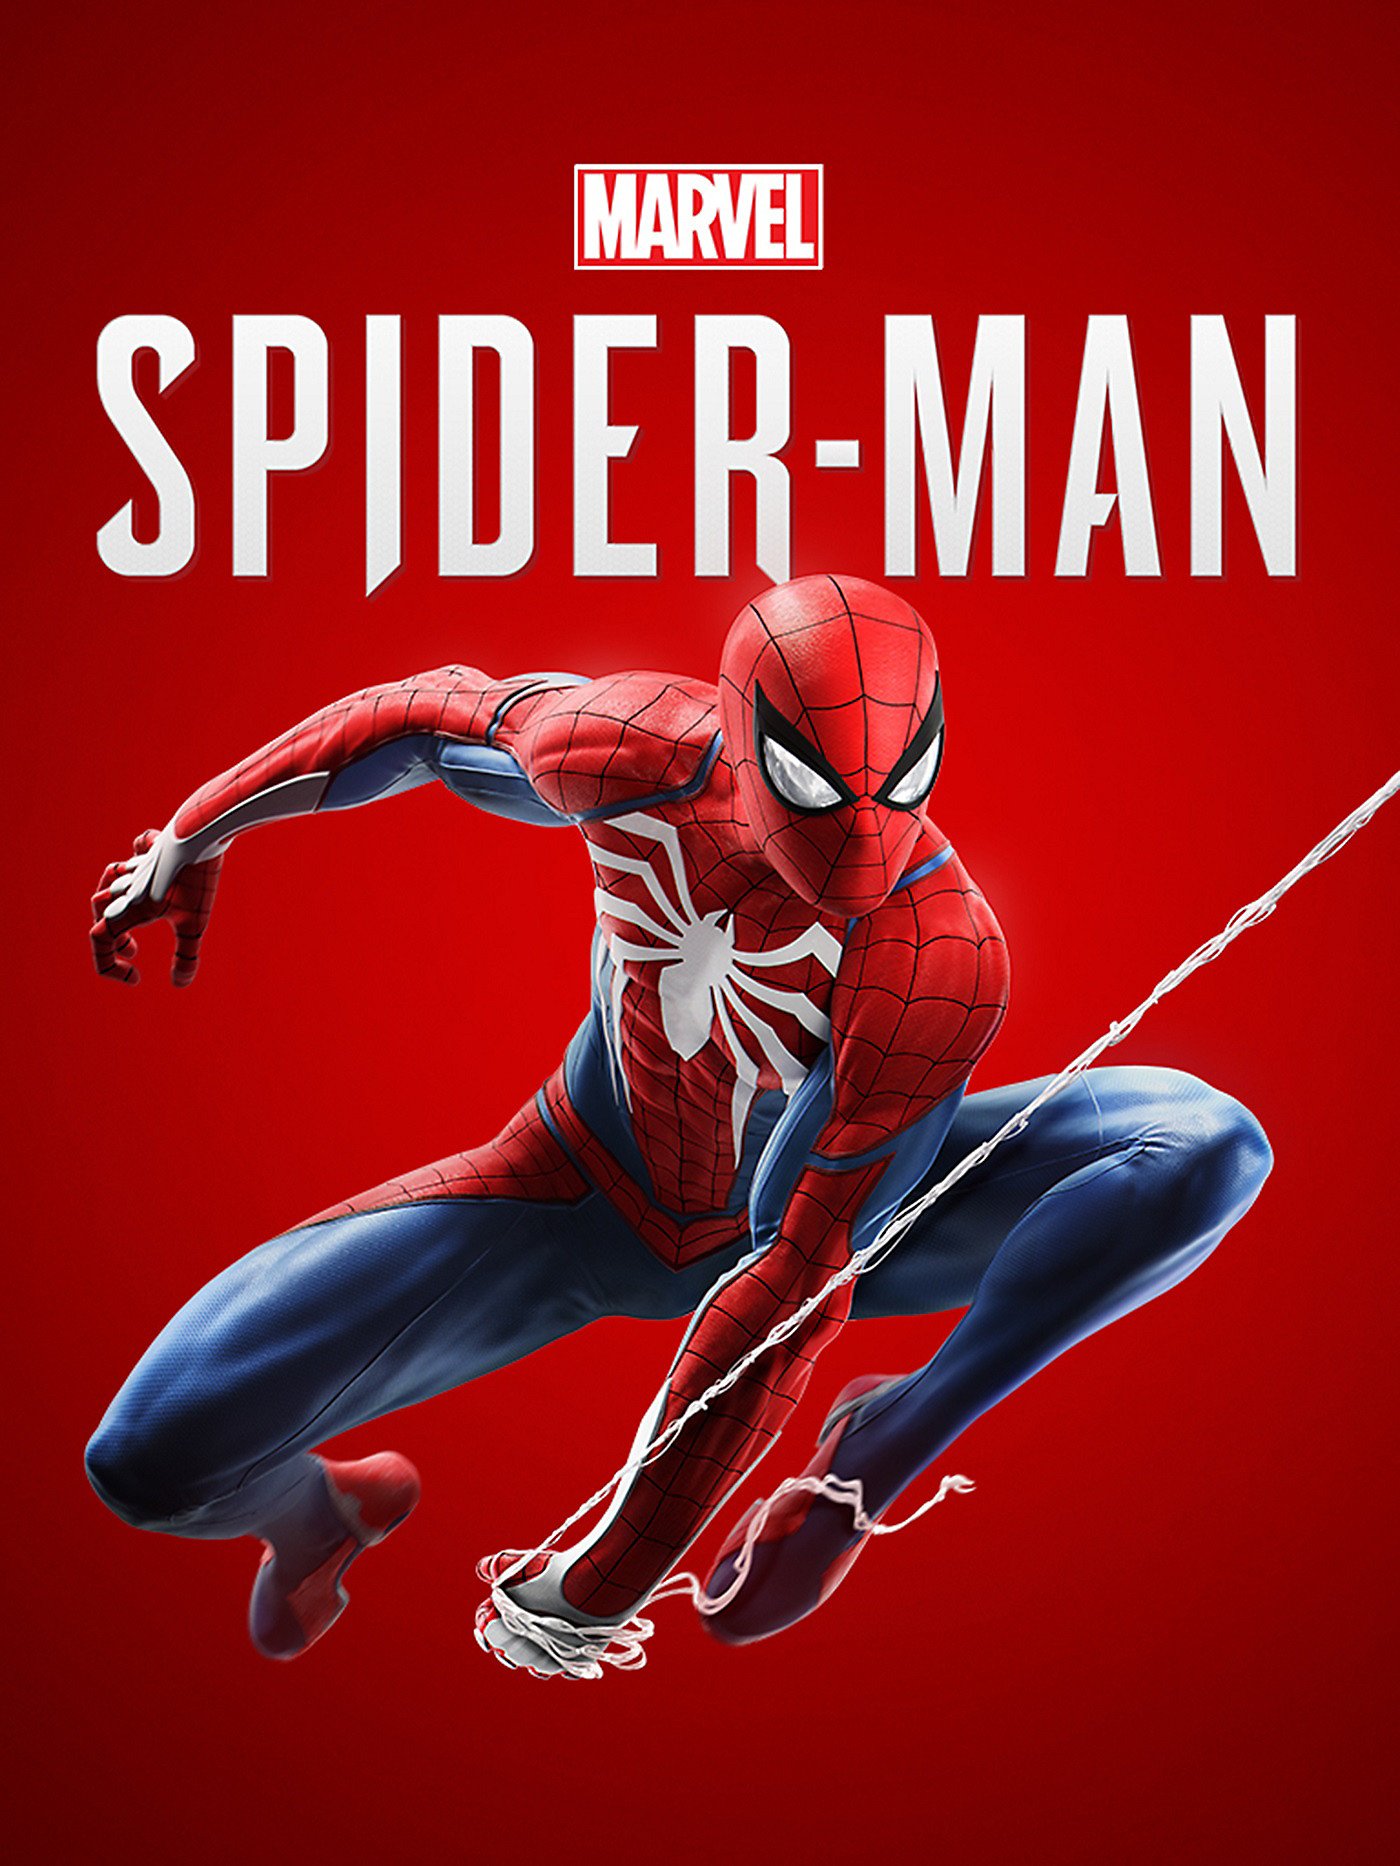 marvels spider man poster image 01 ps4 us 03apr18